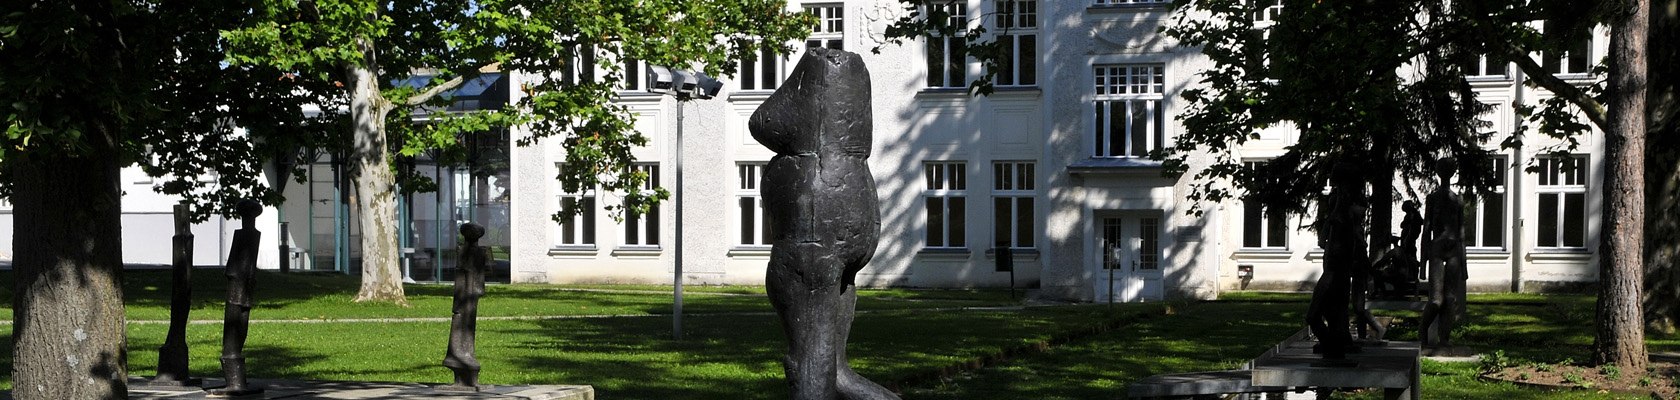 Prof. Knesl Freilichtmuseum, © Weinviertle Tourismus / Mandl